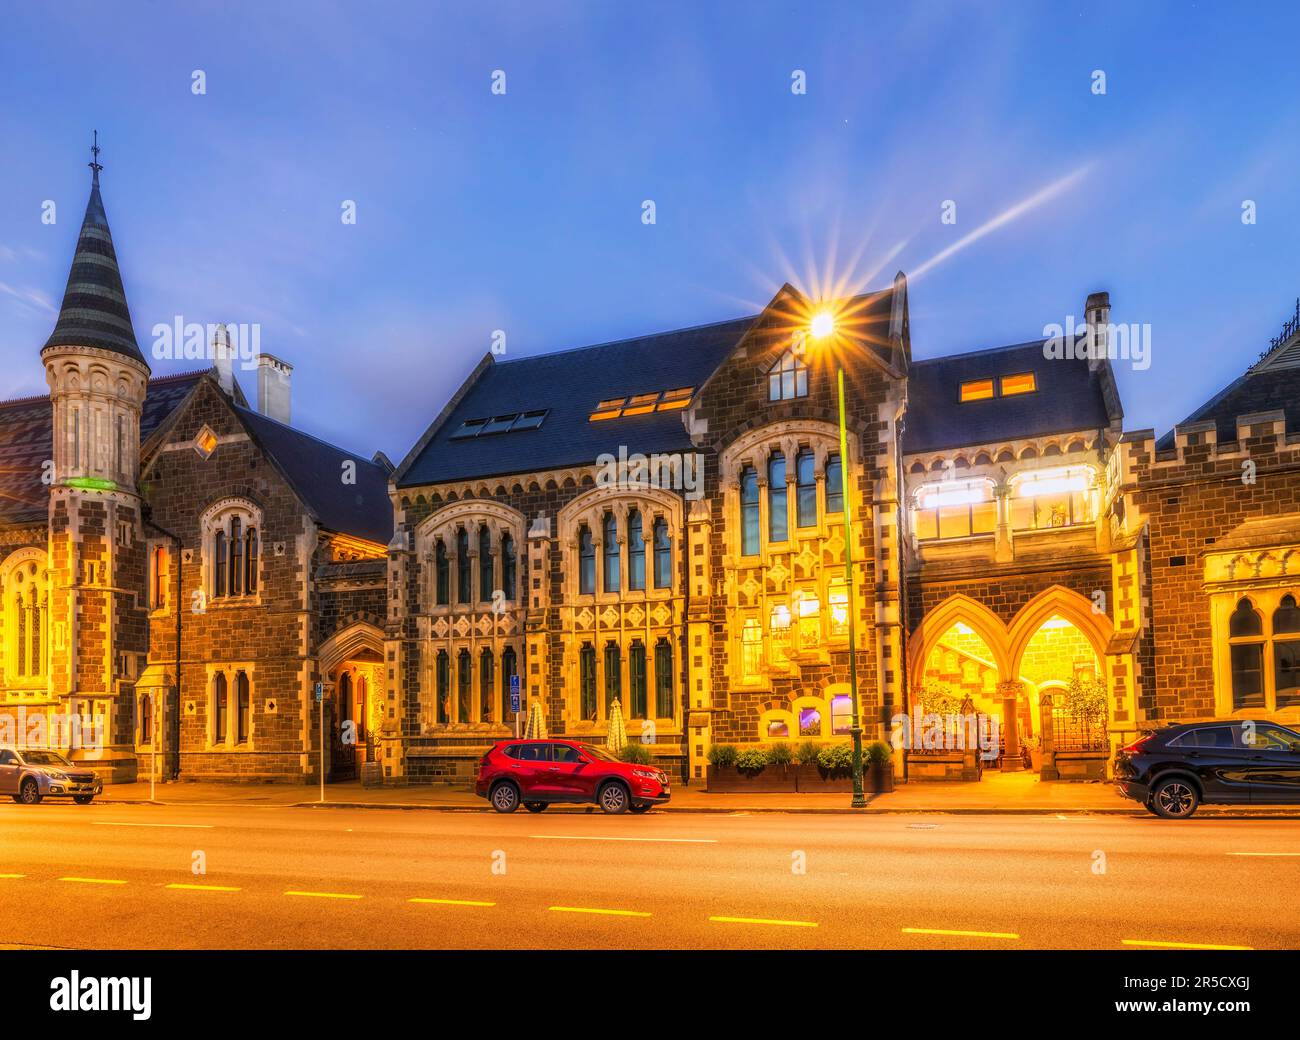 Quartier historique de l'architecture éducative dans la ville de Christchurch, en Nouvelle-Zélande, au coucher du soleil. Banque D'Images